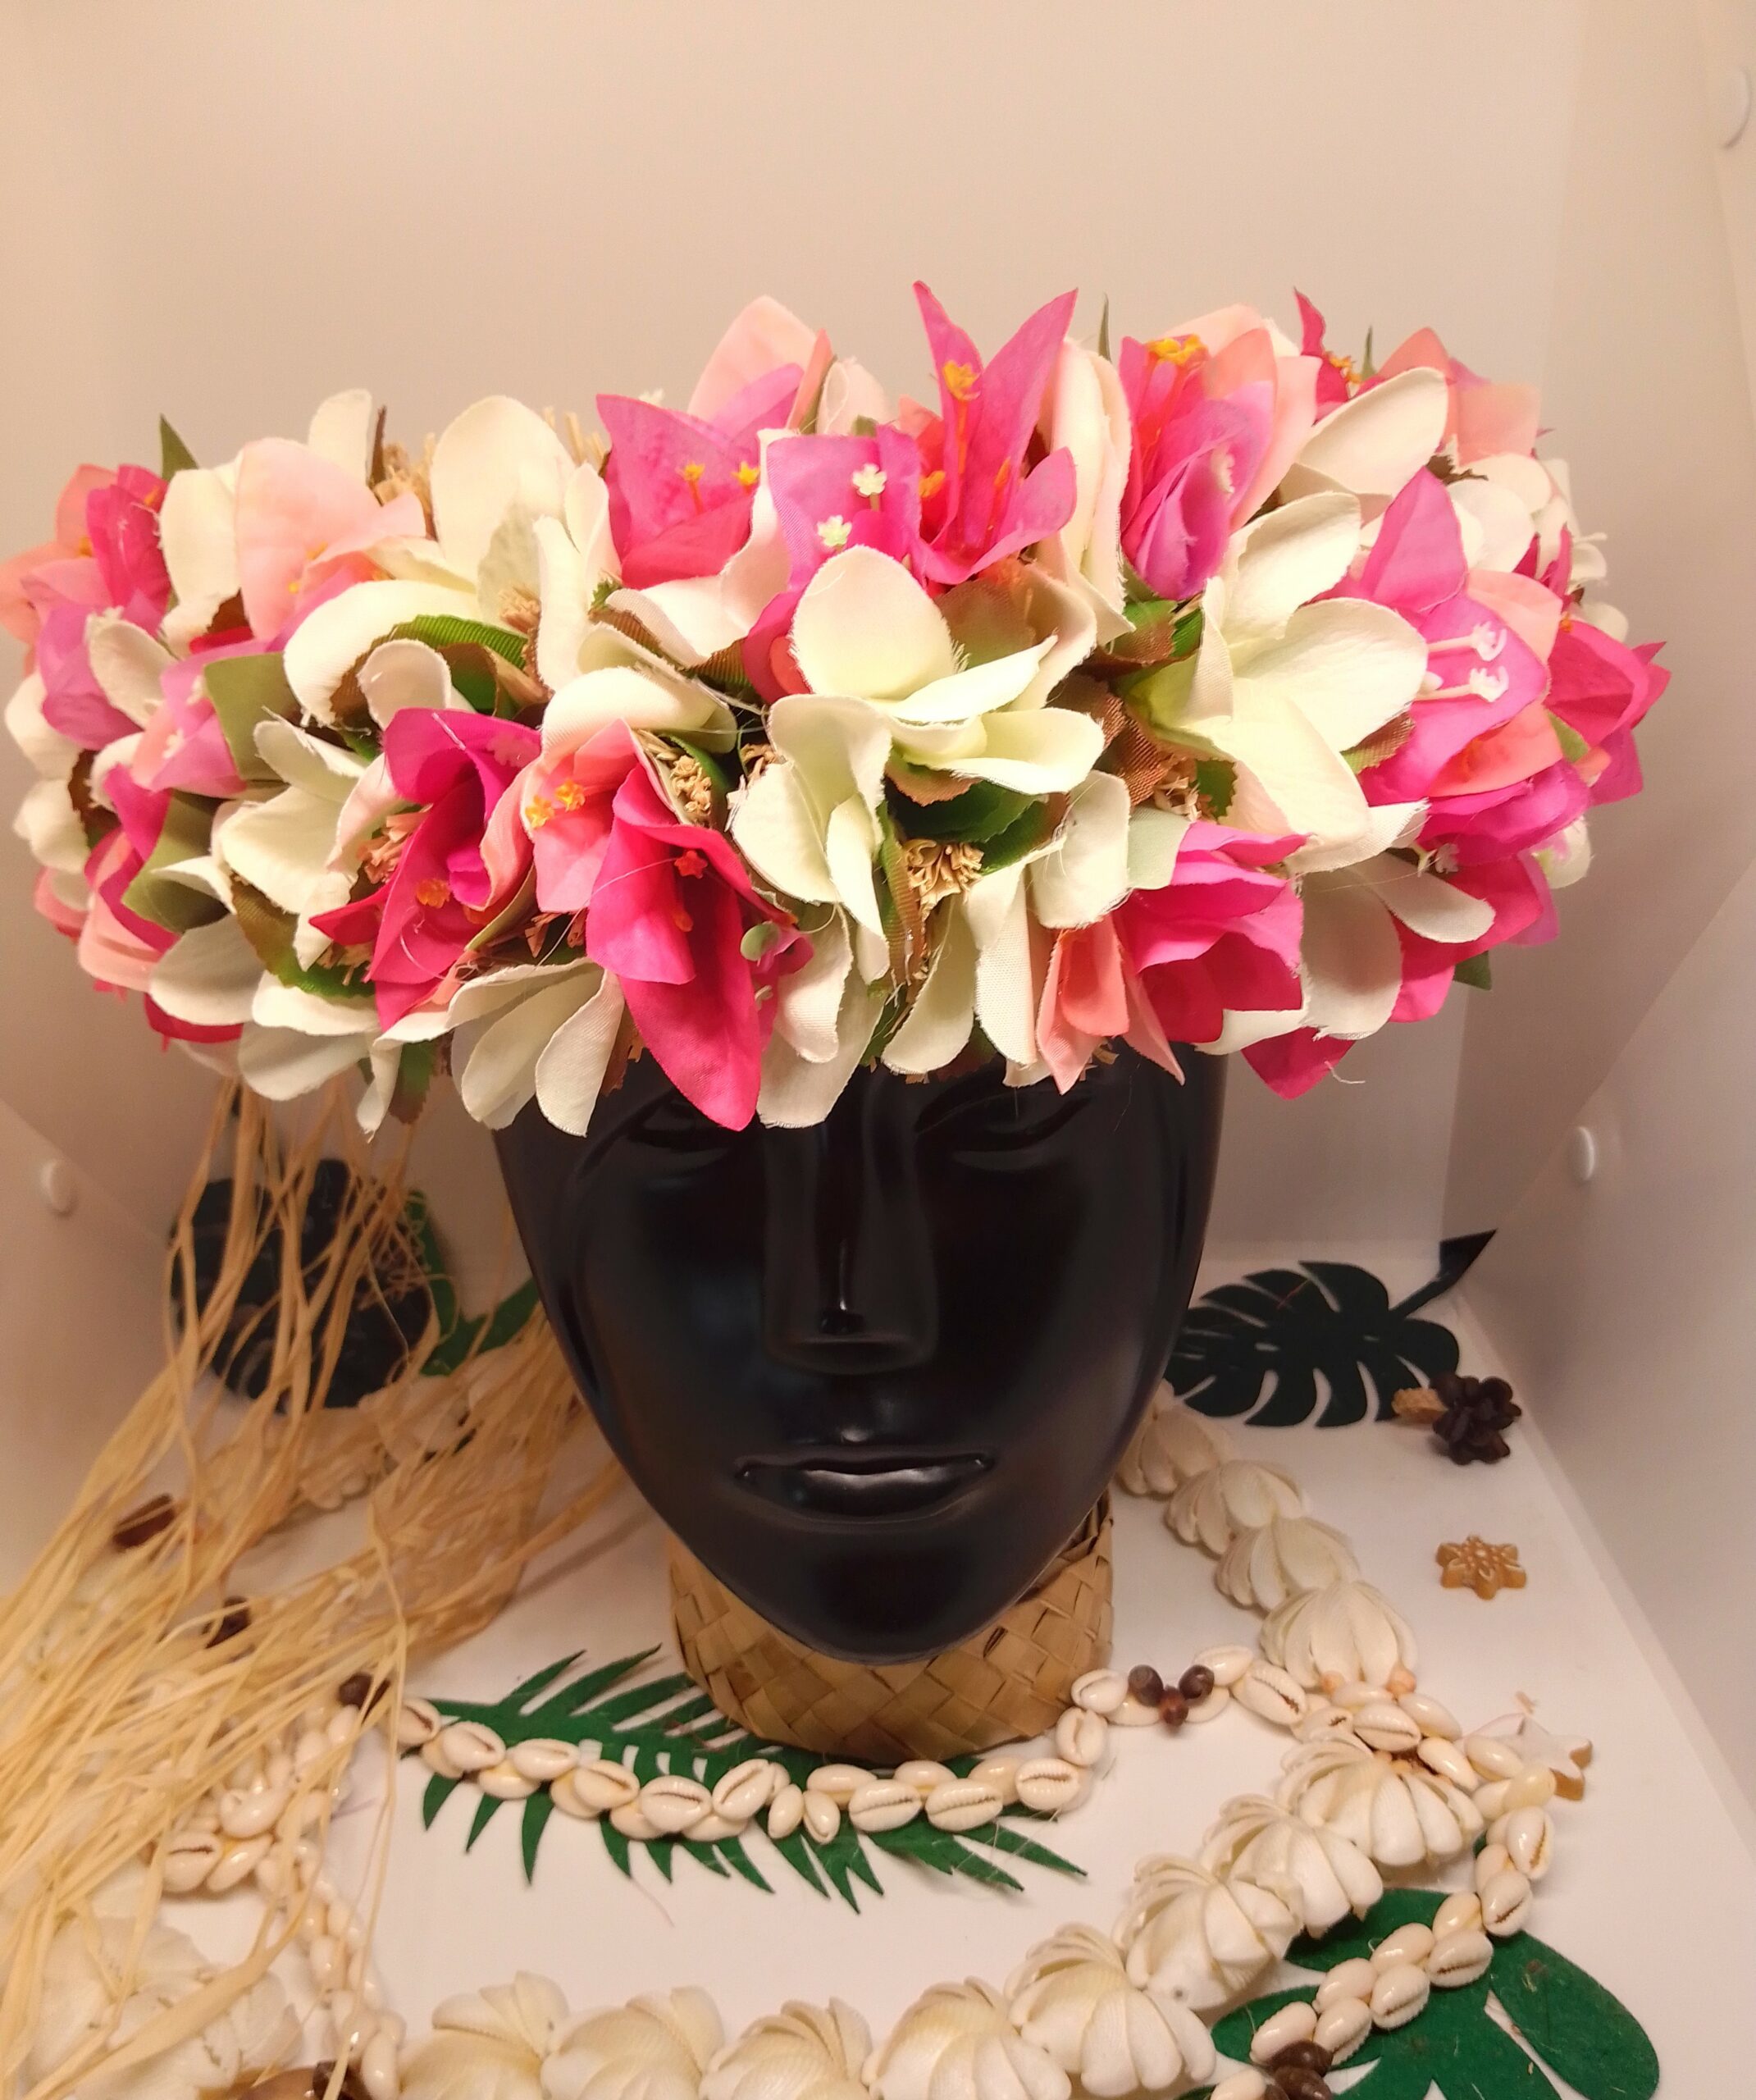 couronne de tête base de bouquet de raphia vaite e tiare créations avec des brins de bougainvilliers en trois teintes de roses et des frangipaniers blancs